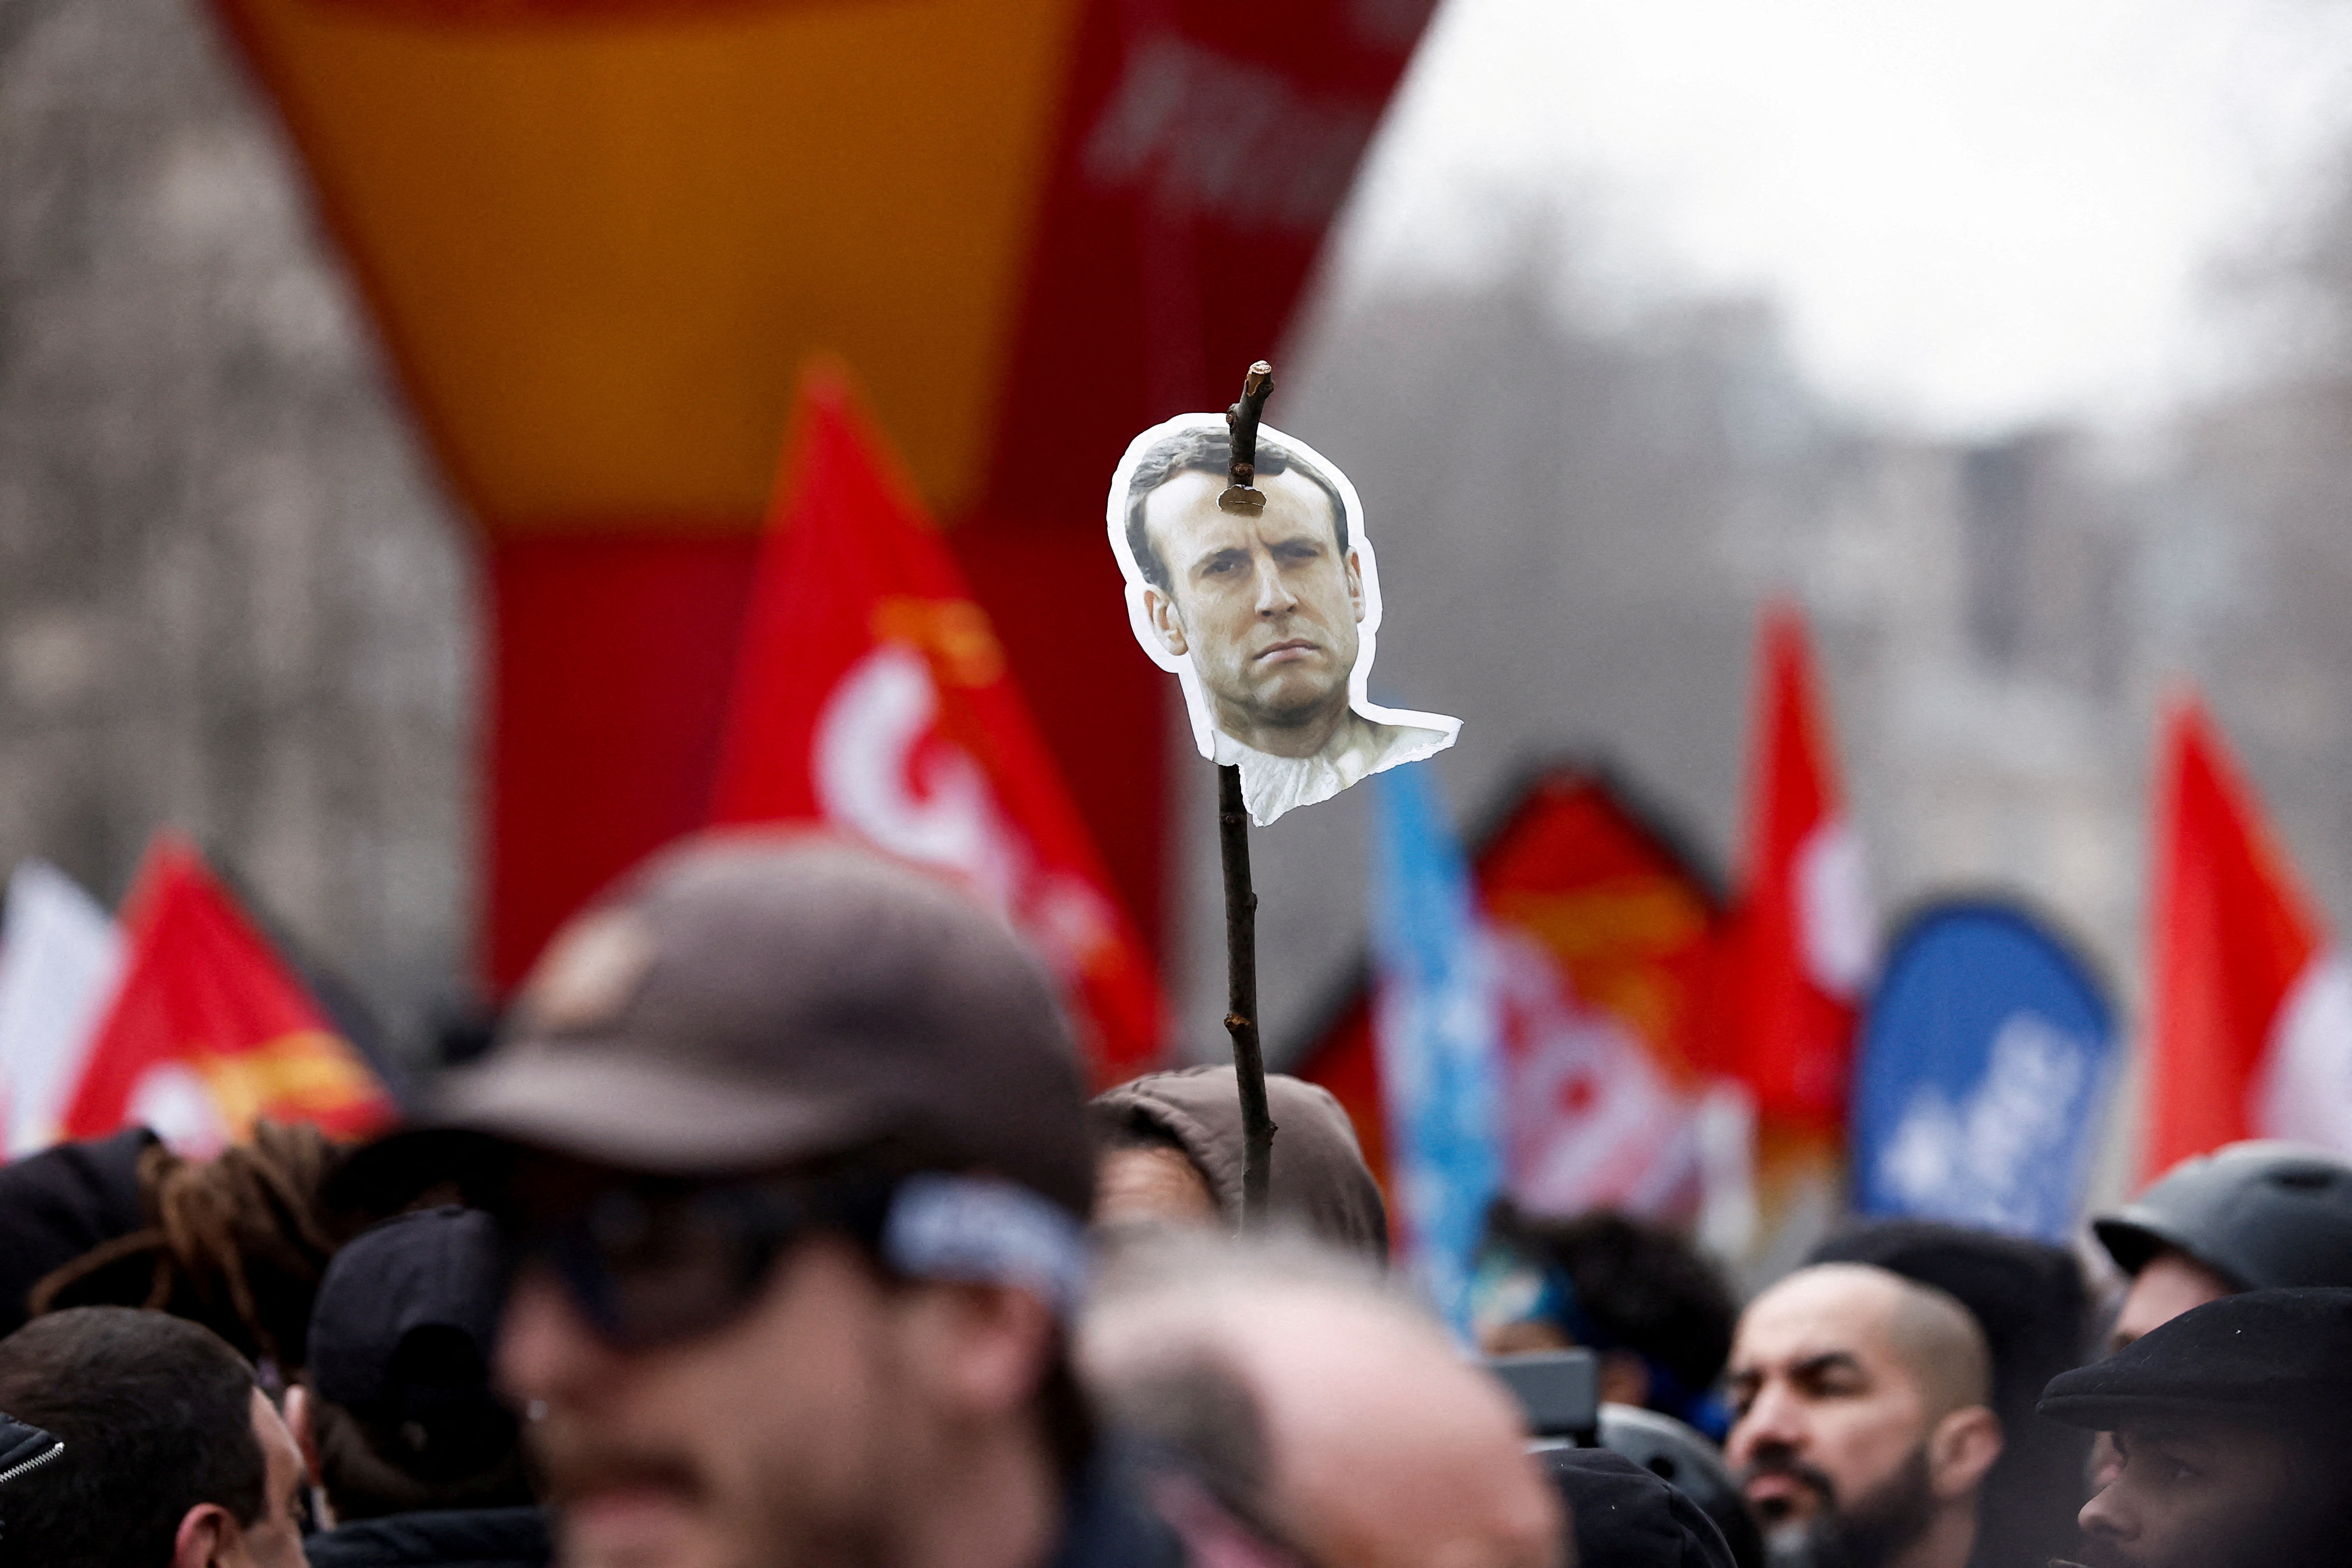 Un manifestante sostiene una imagen que representa al presidente francés Emmanuel Macron en un palo (REUTERS/Benoit Tessier/File Photo)